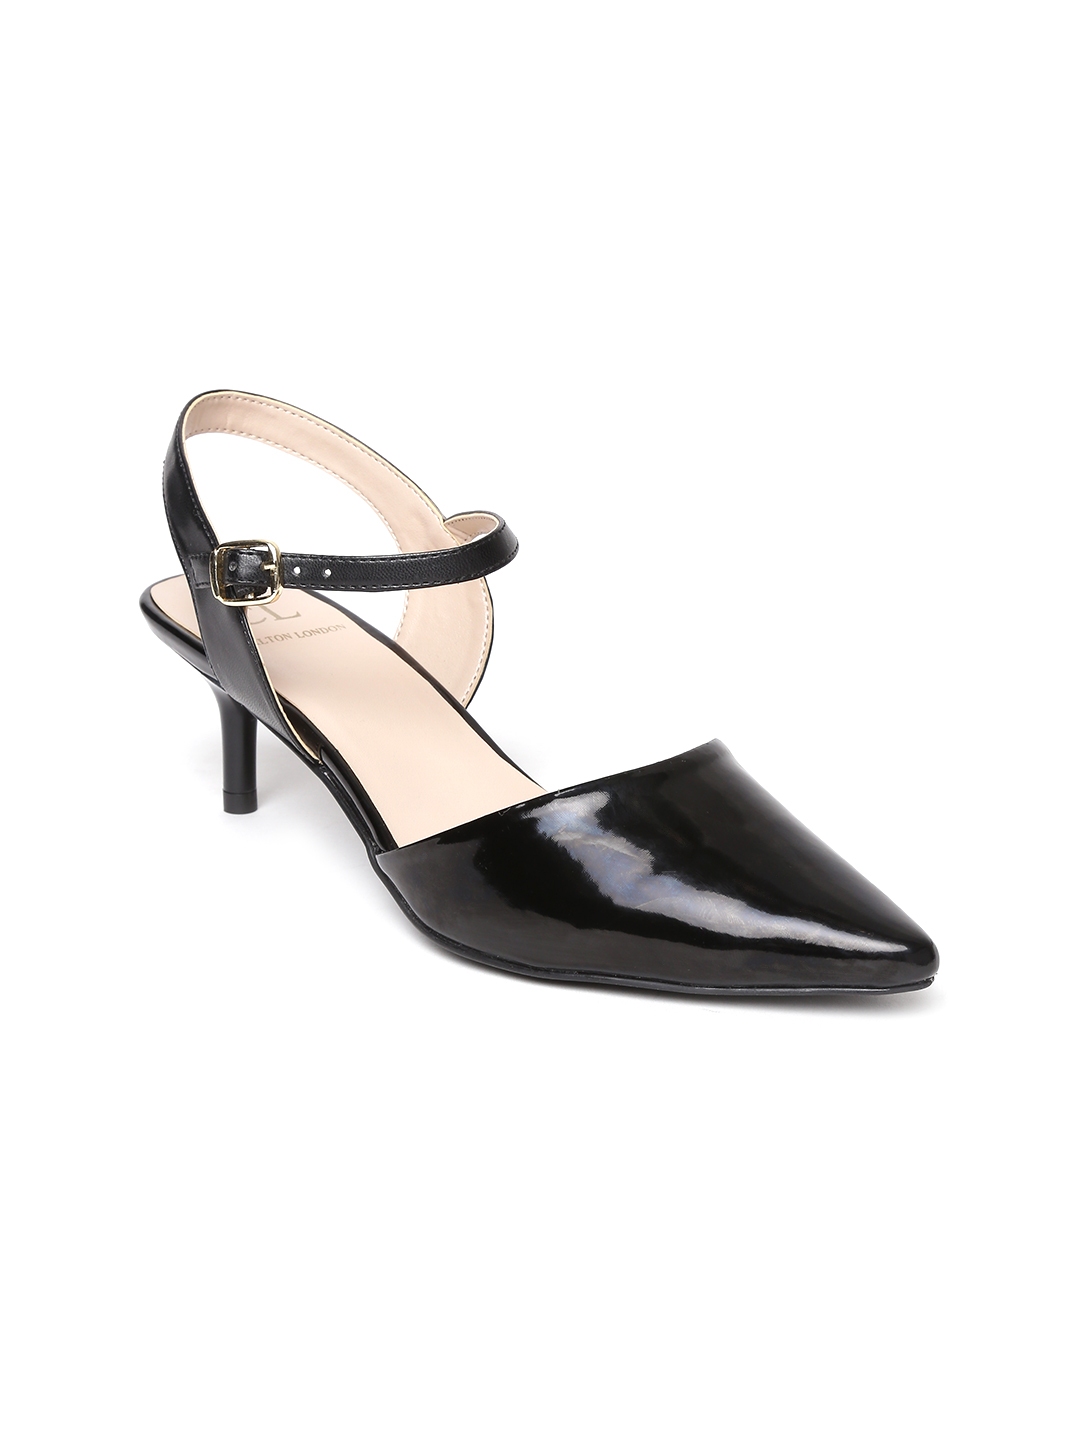 Buy Carlton London Women Black Solid Pumps - Heels for Women 2270497 ...